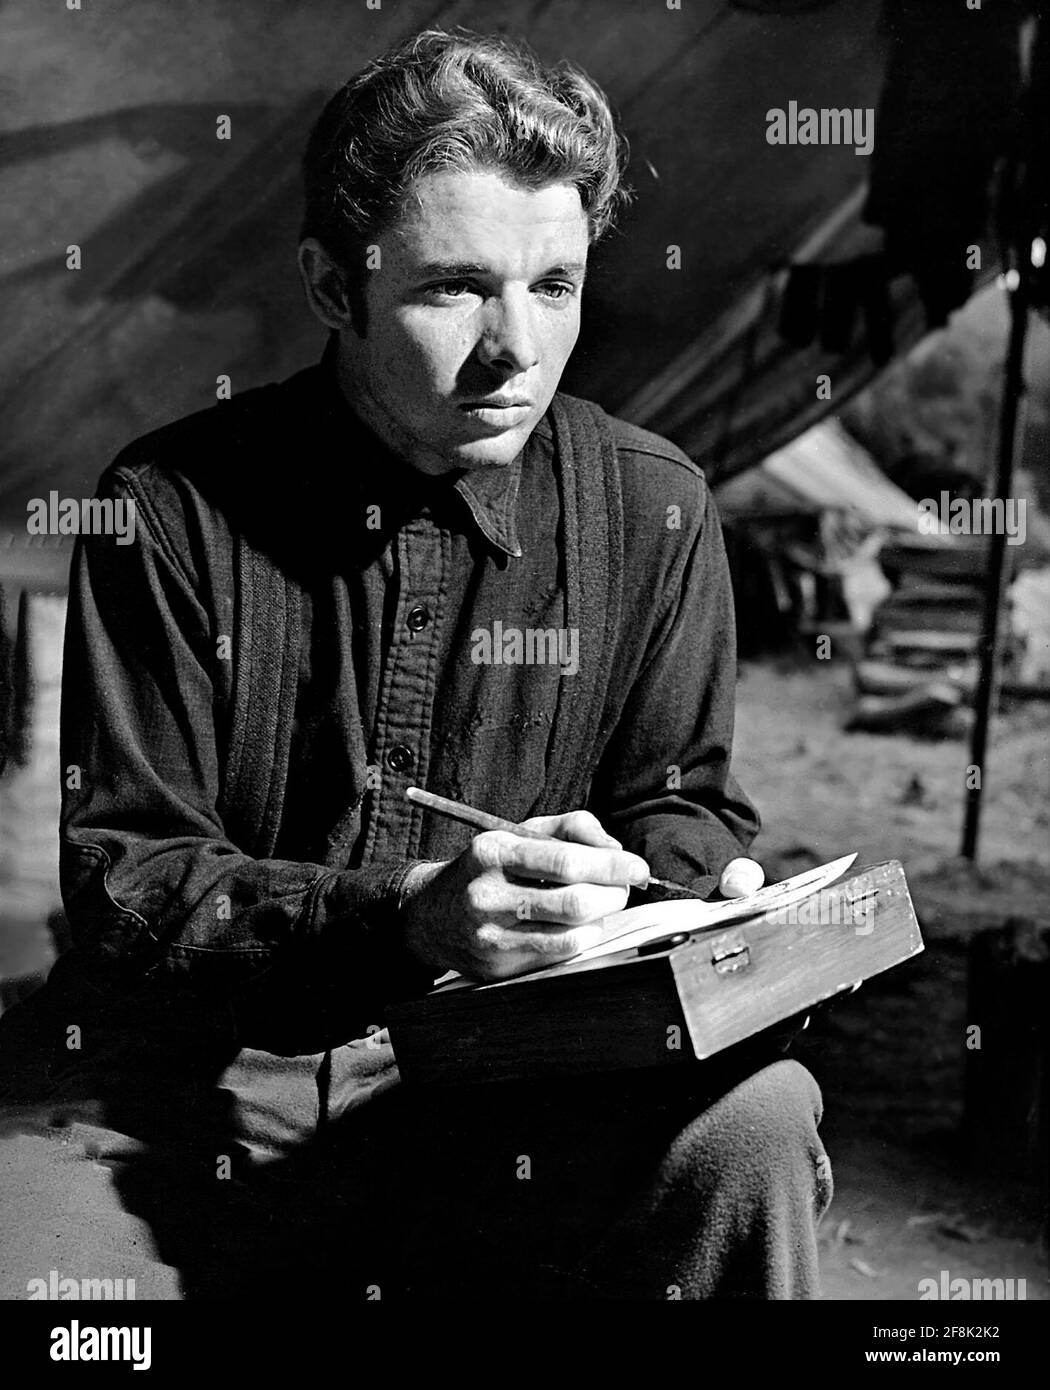 Audie Murphy. Retrato del soldado y actor estadounidense, Audie Leon Murphy (1925-1971), publicidad aún de la Insignia Roja de la valentía, 1951 Foto de stock